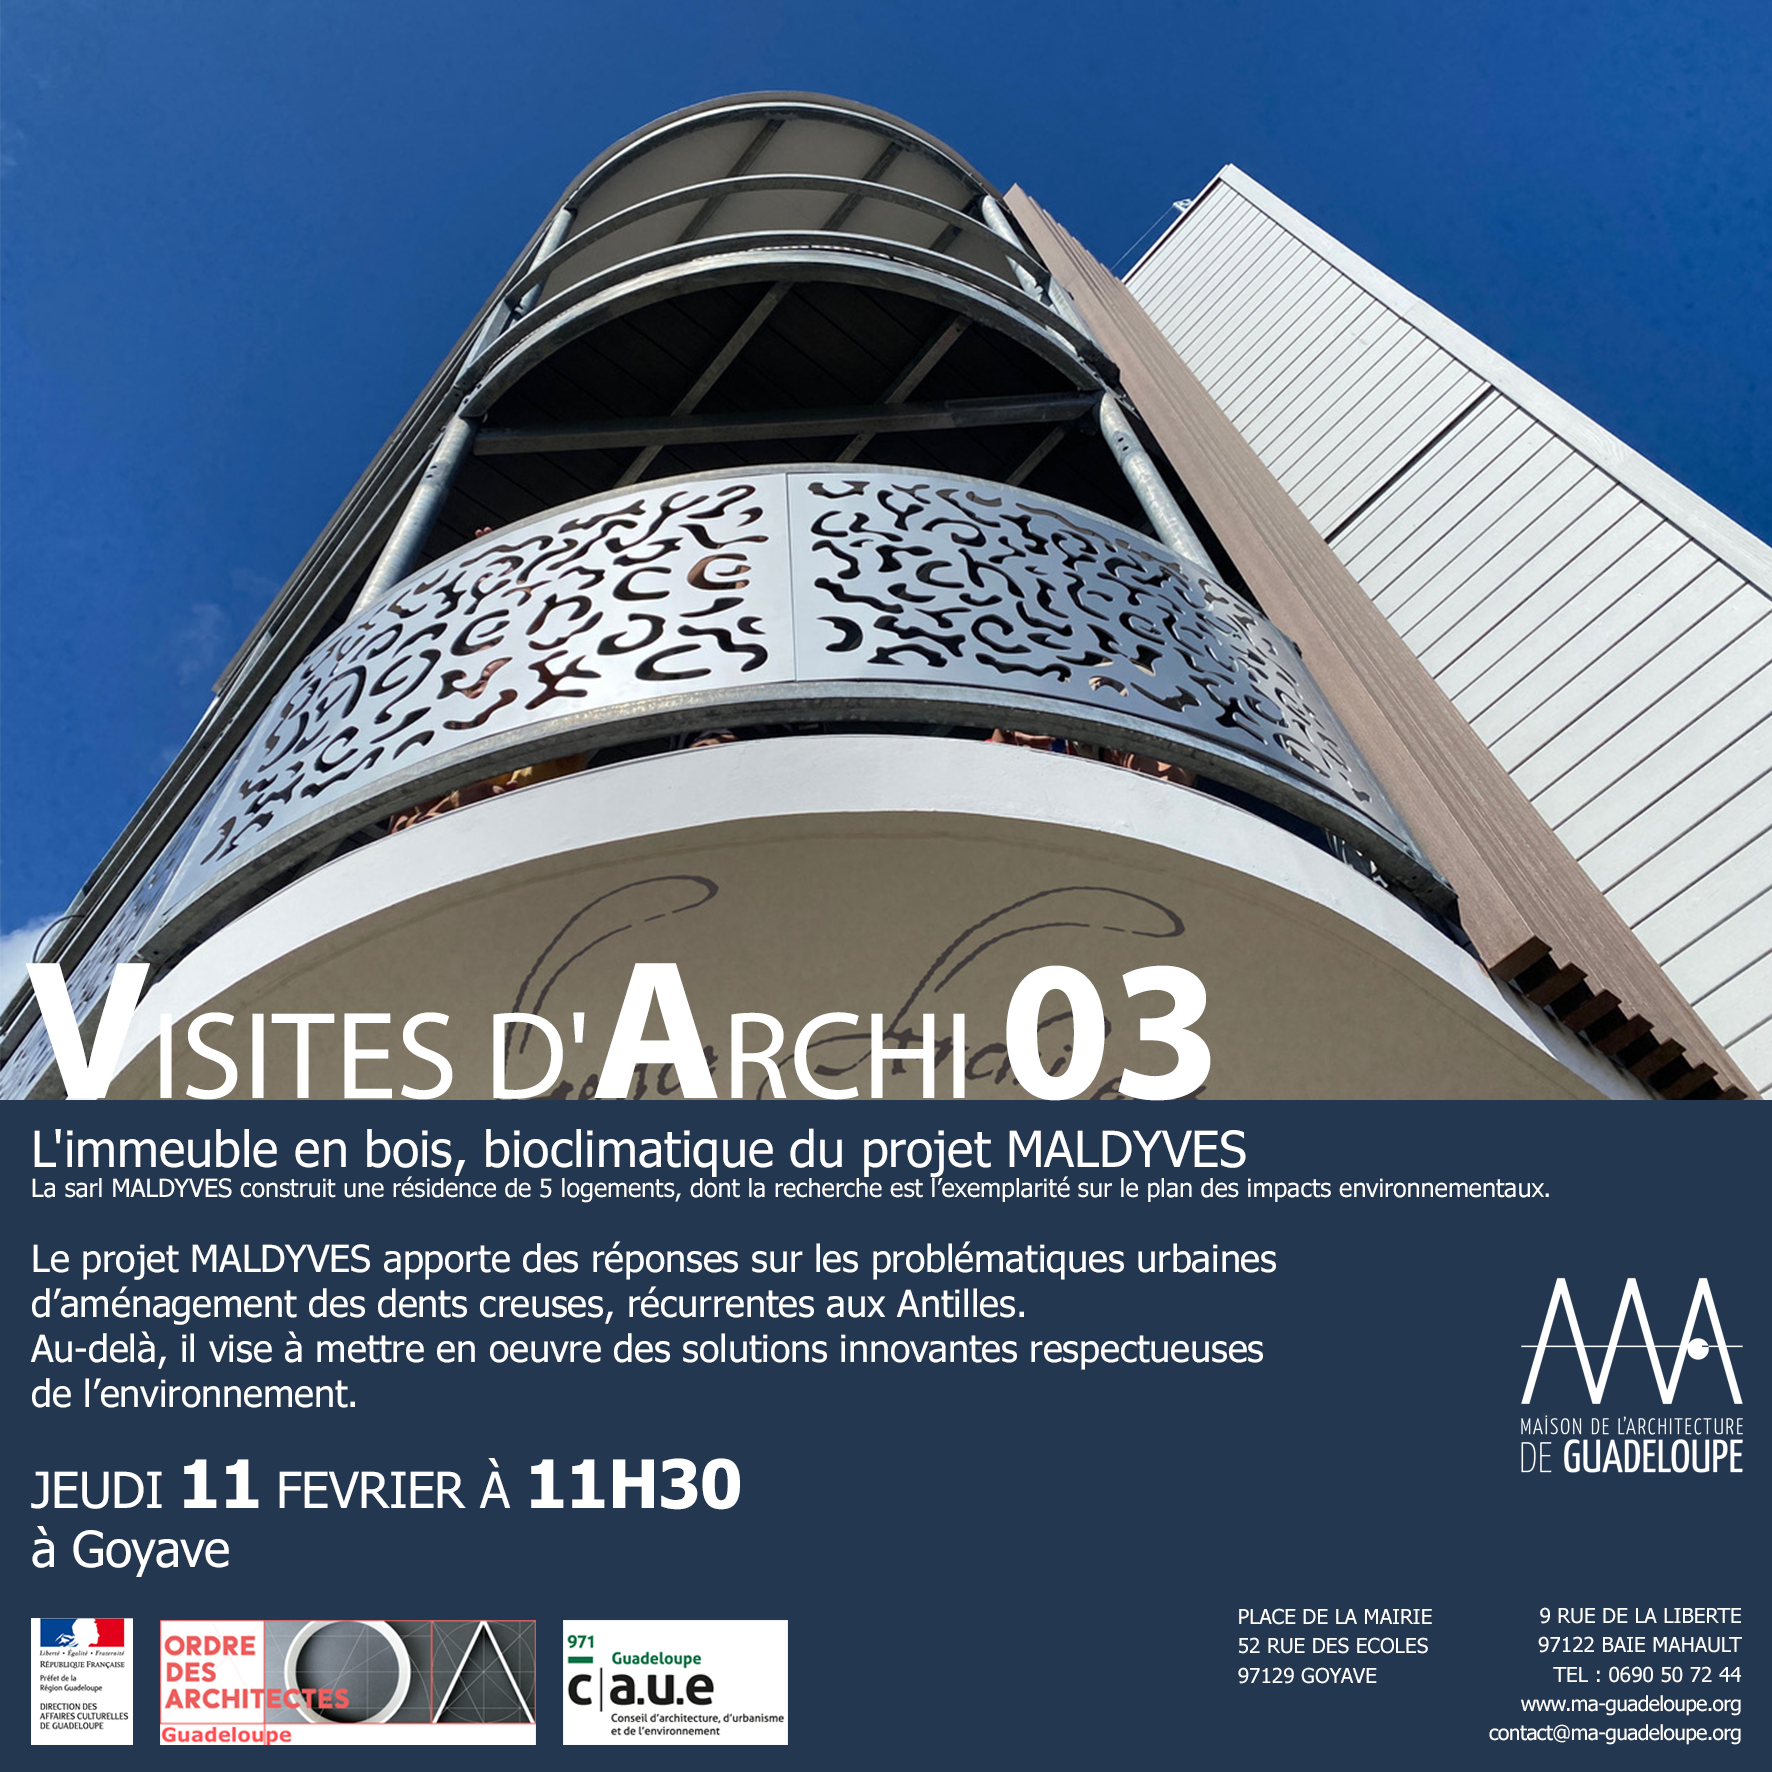 You are currently viewing Retour en images : Visite d’Archi 03  » L’immeuble en bois, bioclimatique du projet Maldyves « 